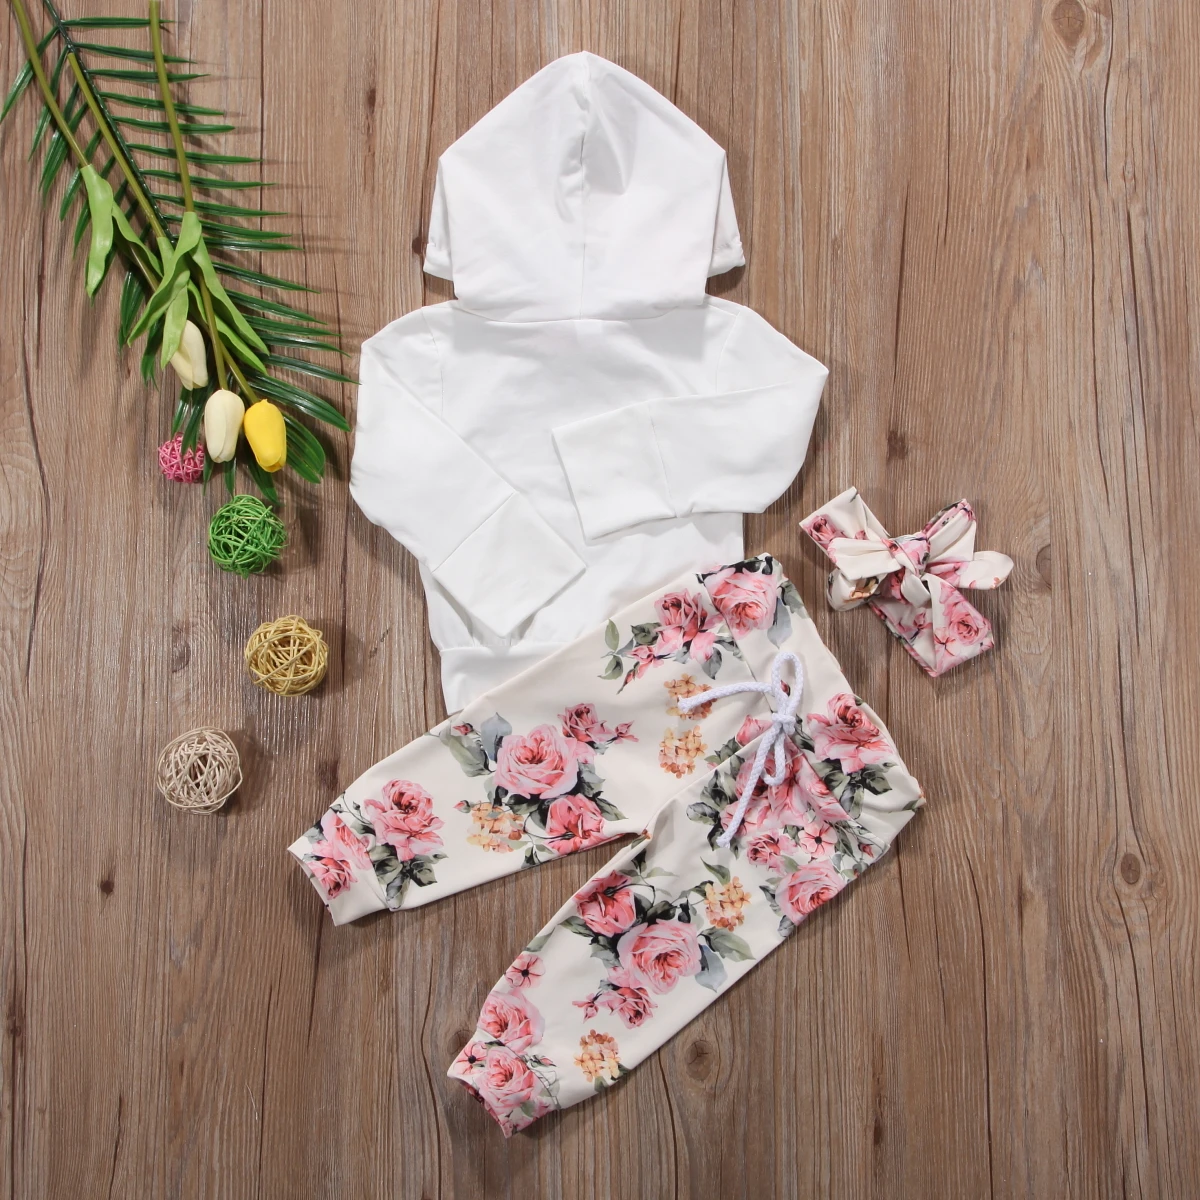 Новорожденных Одежда для детей; малышей; девочек толстовка с капюшоном HoodiesTops+ брюки с цветочным принтом брюки повязка цветок комплект одежды 0-24 м 3 шт